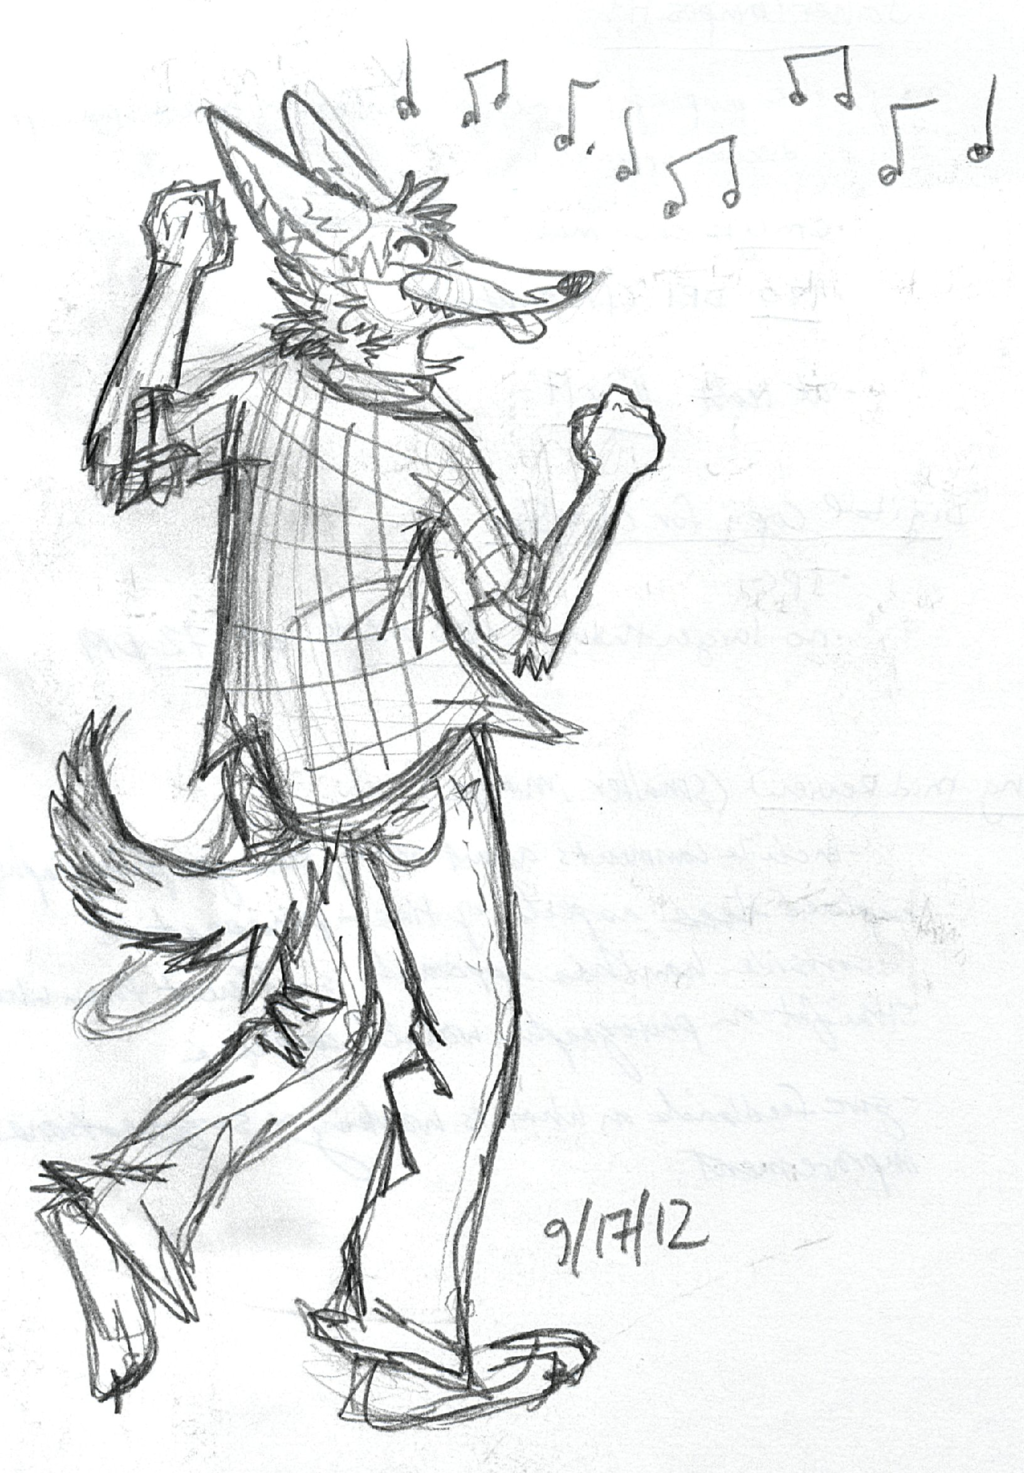 Crazy Coyote Conga [Sketch]